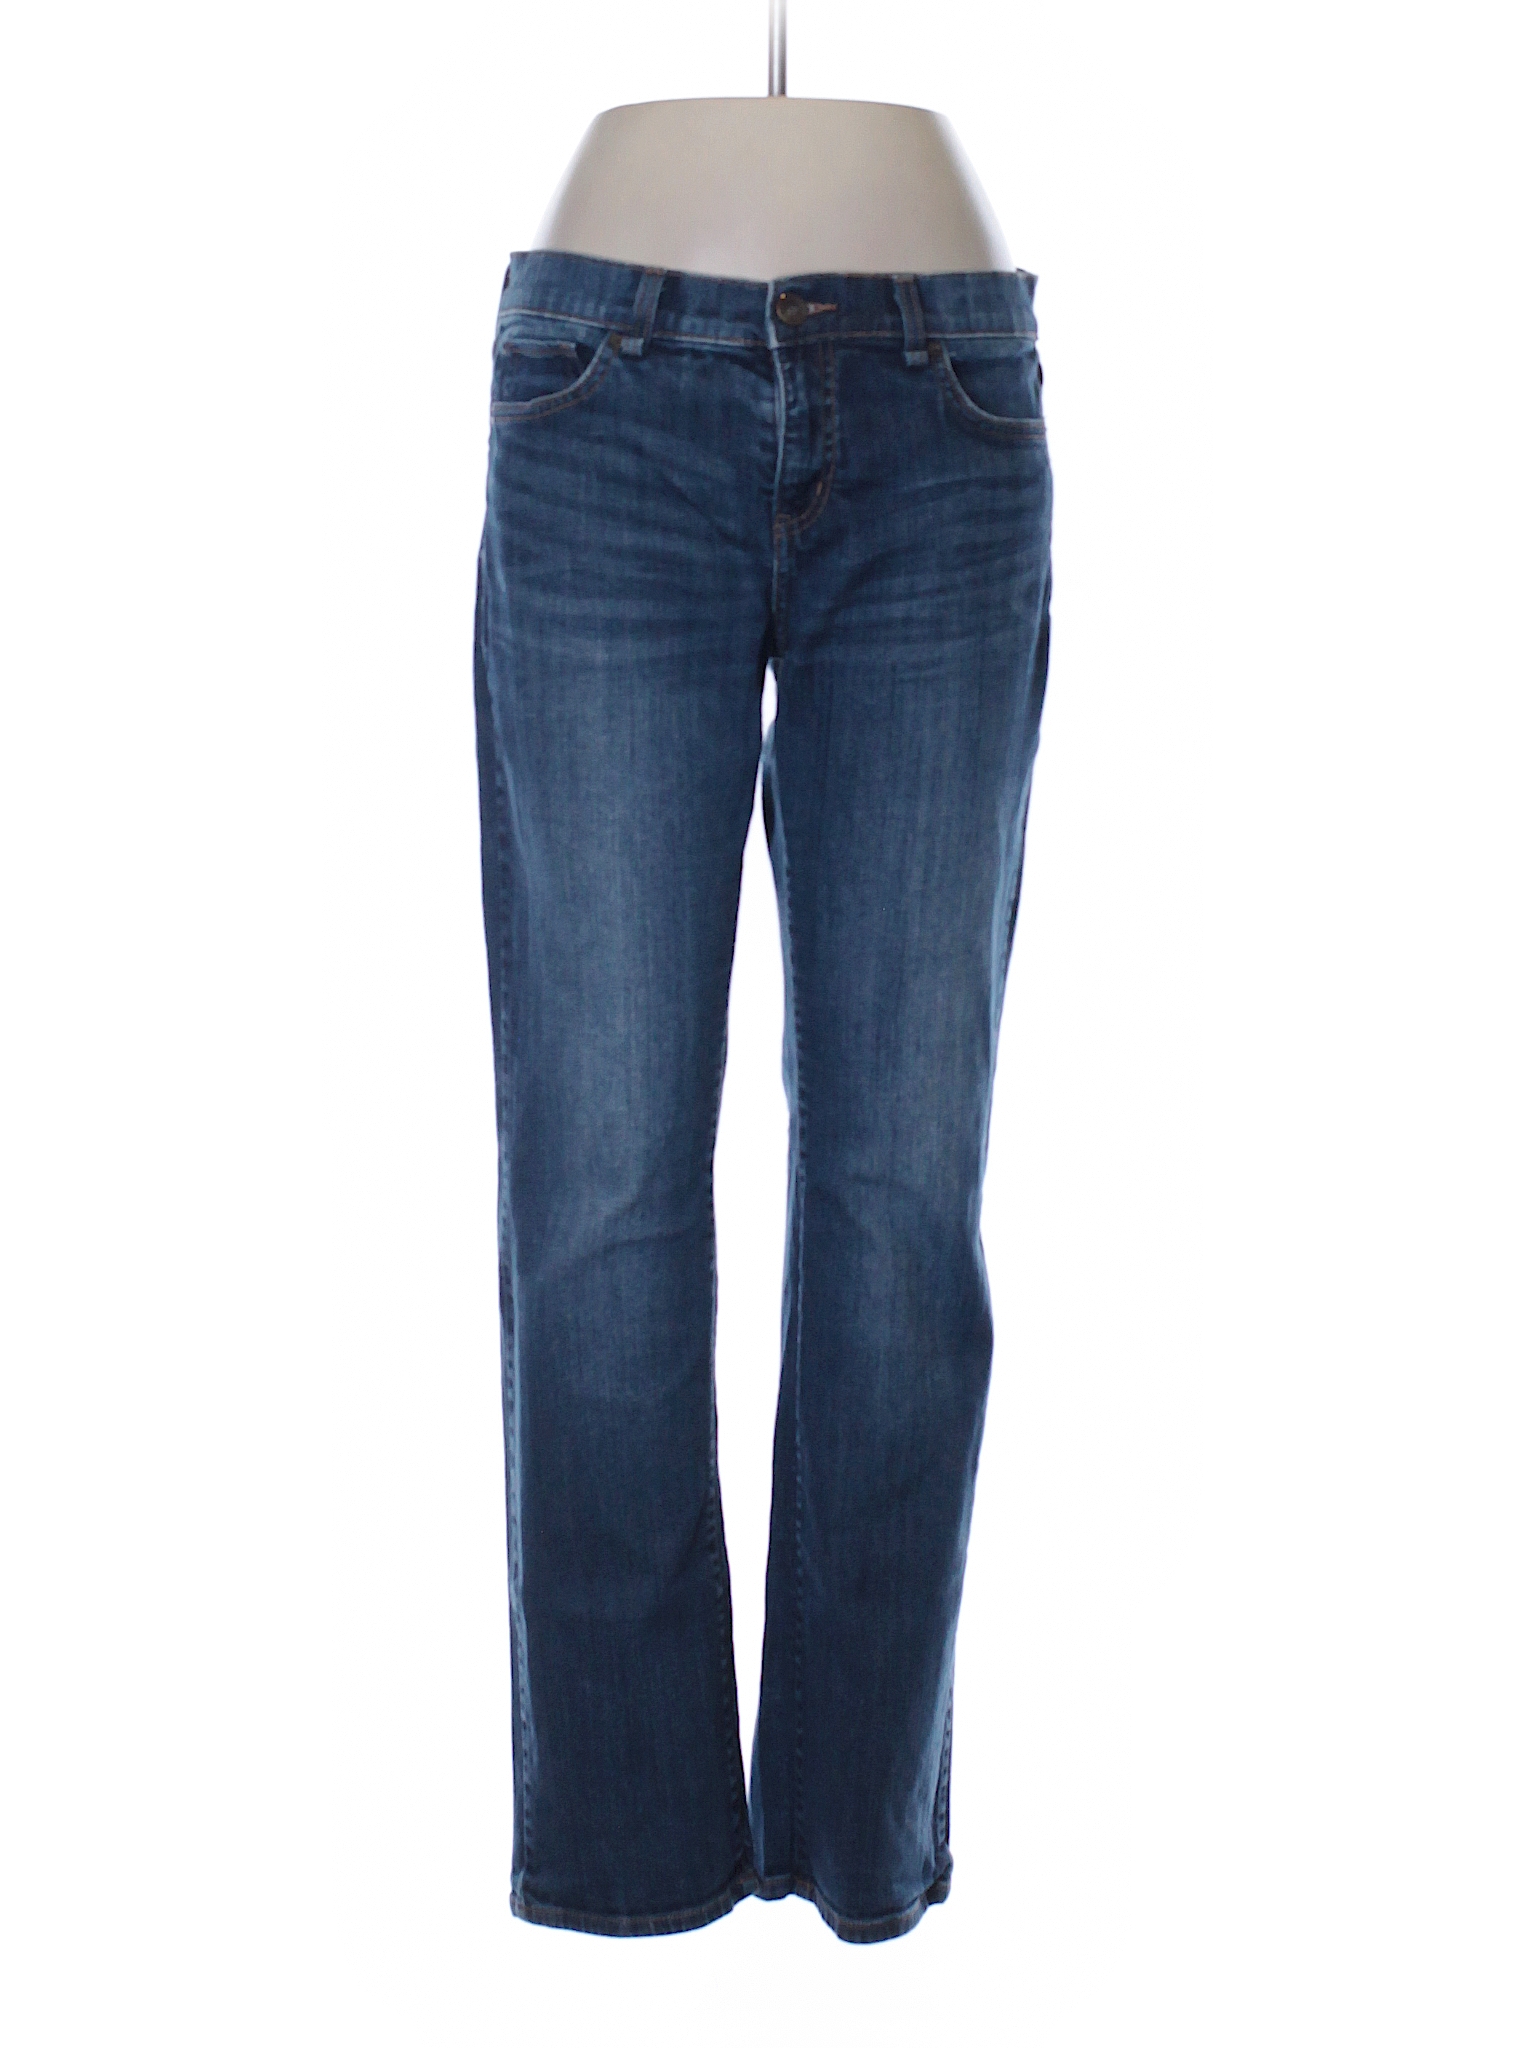 Jcpenney Solid Dark Blue Jeans 31 Waist - 70% off | thredUP